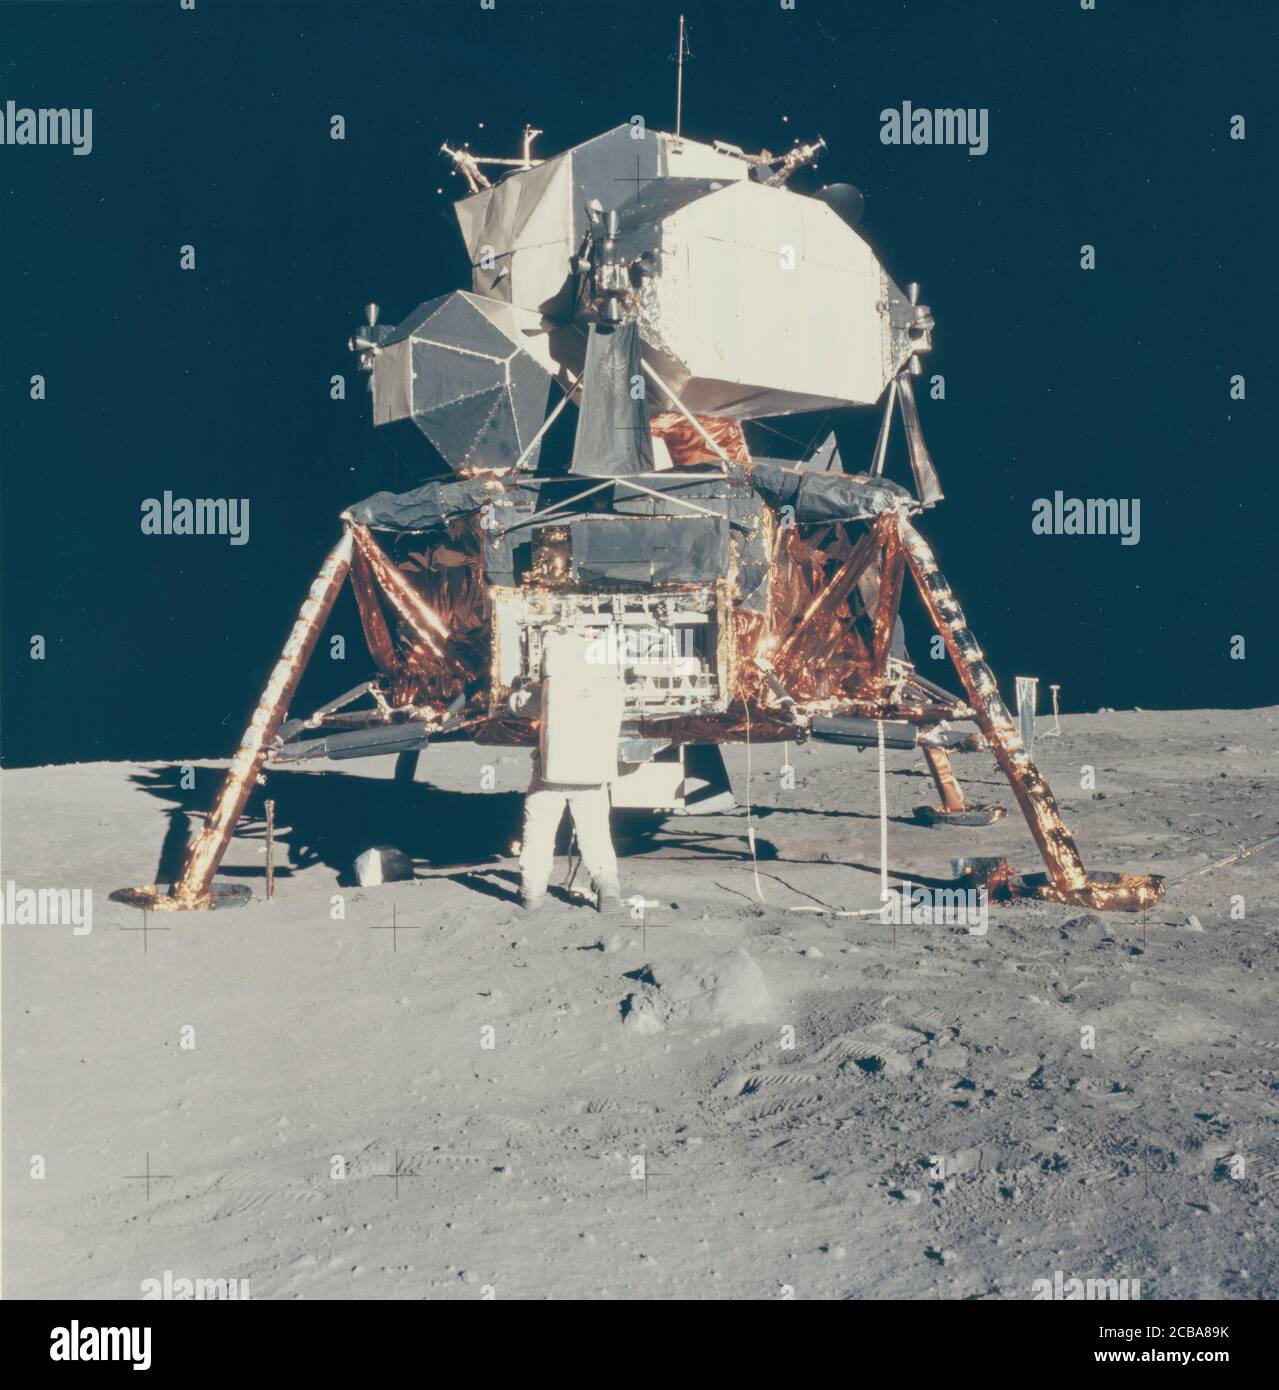 Buzz Aldrin with Apollo 11 Lunar Module on the Moon, 1969. Stock Photo